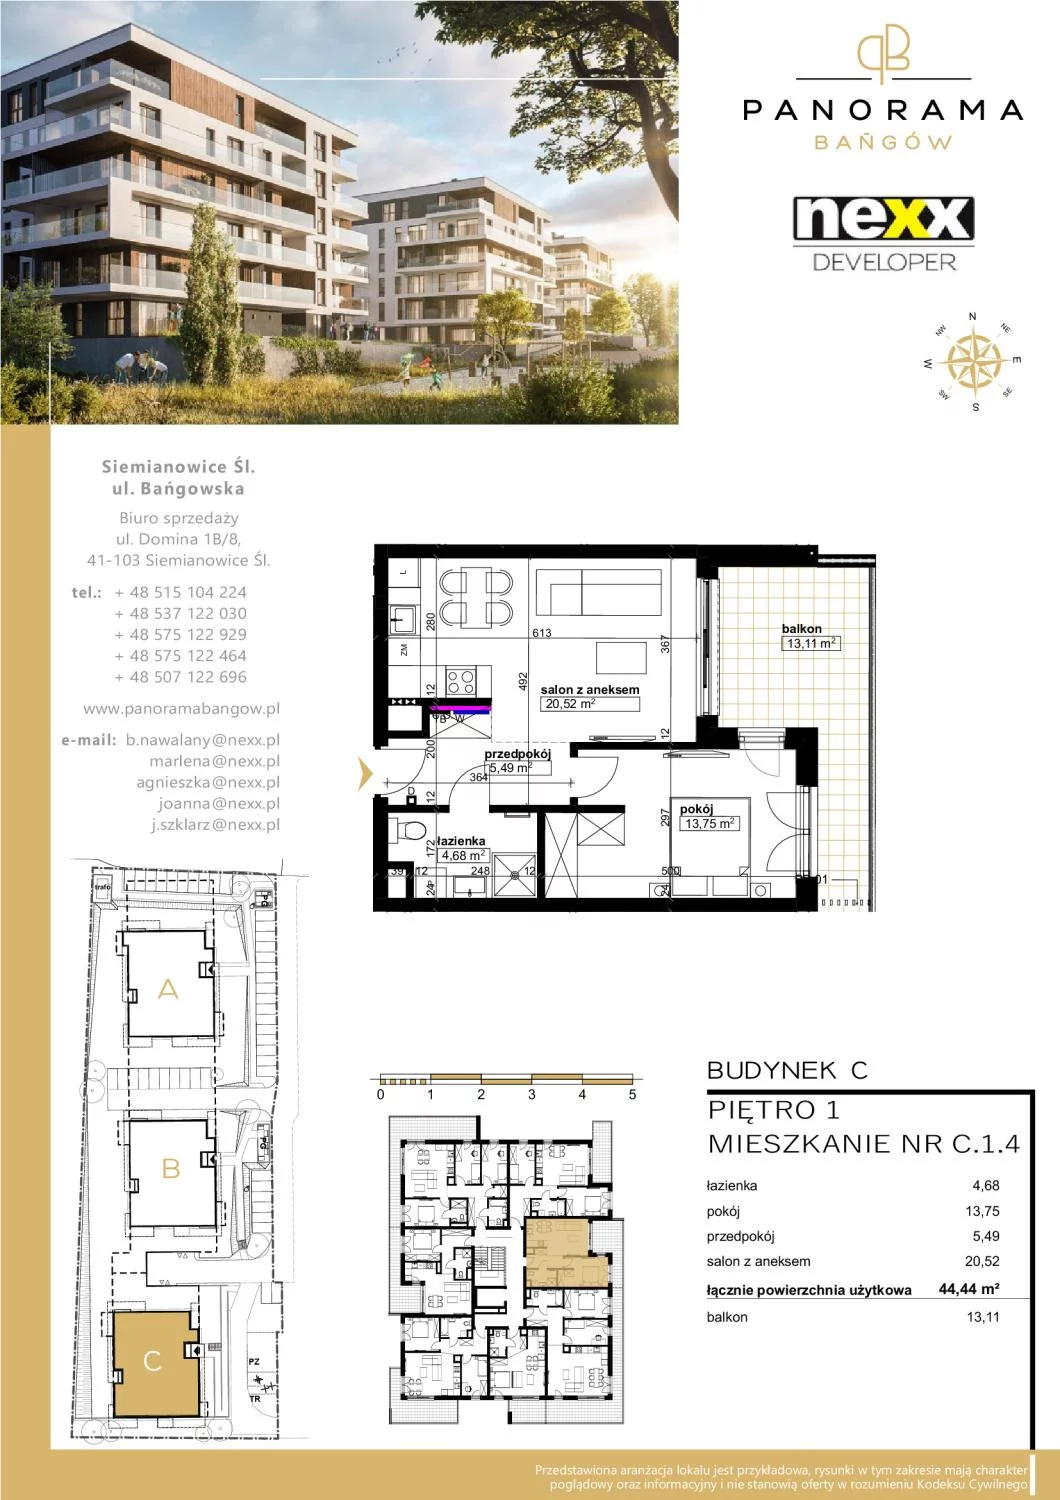 Mieszkanie 44,44 m², piętro 1, oferta nr C 1.4, Panorama Bańgów, Siemianowice Śląskie, Bańgów, ul. Bańgowska